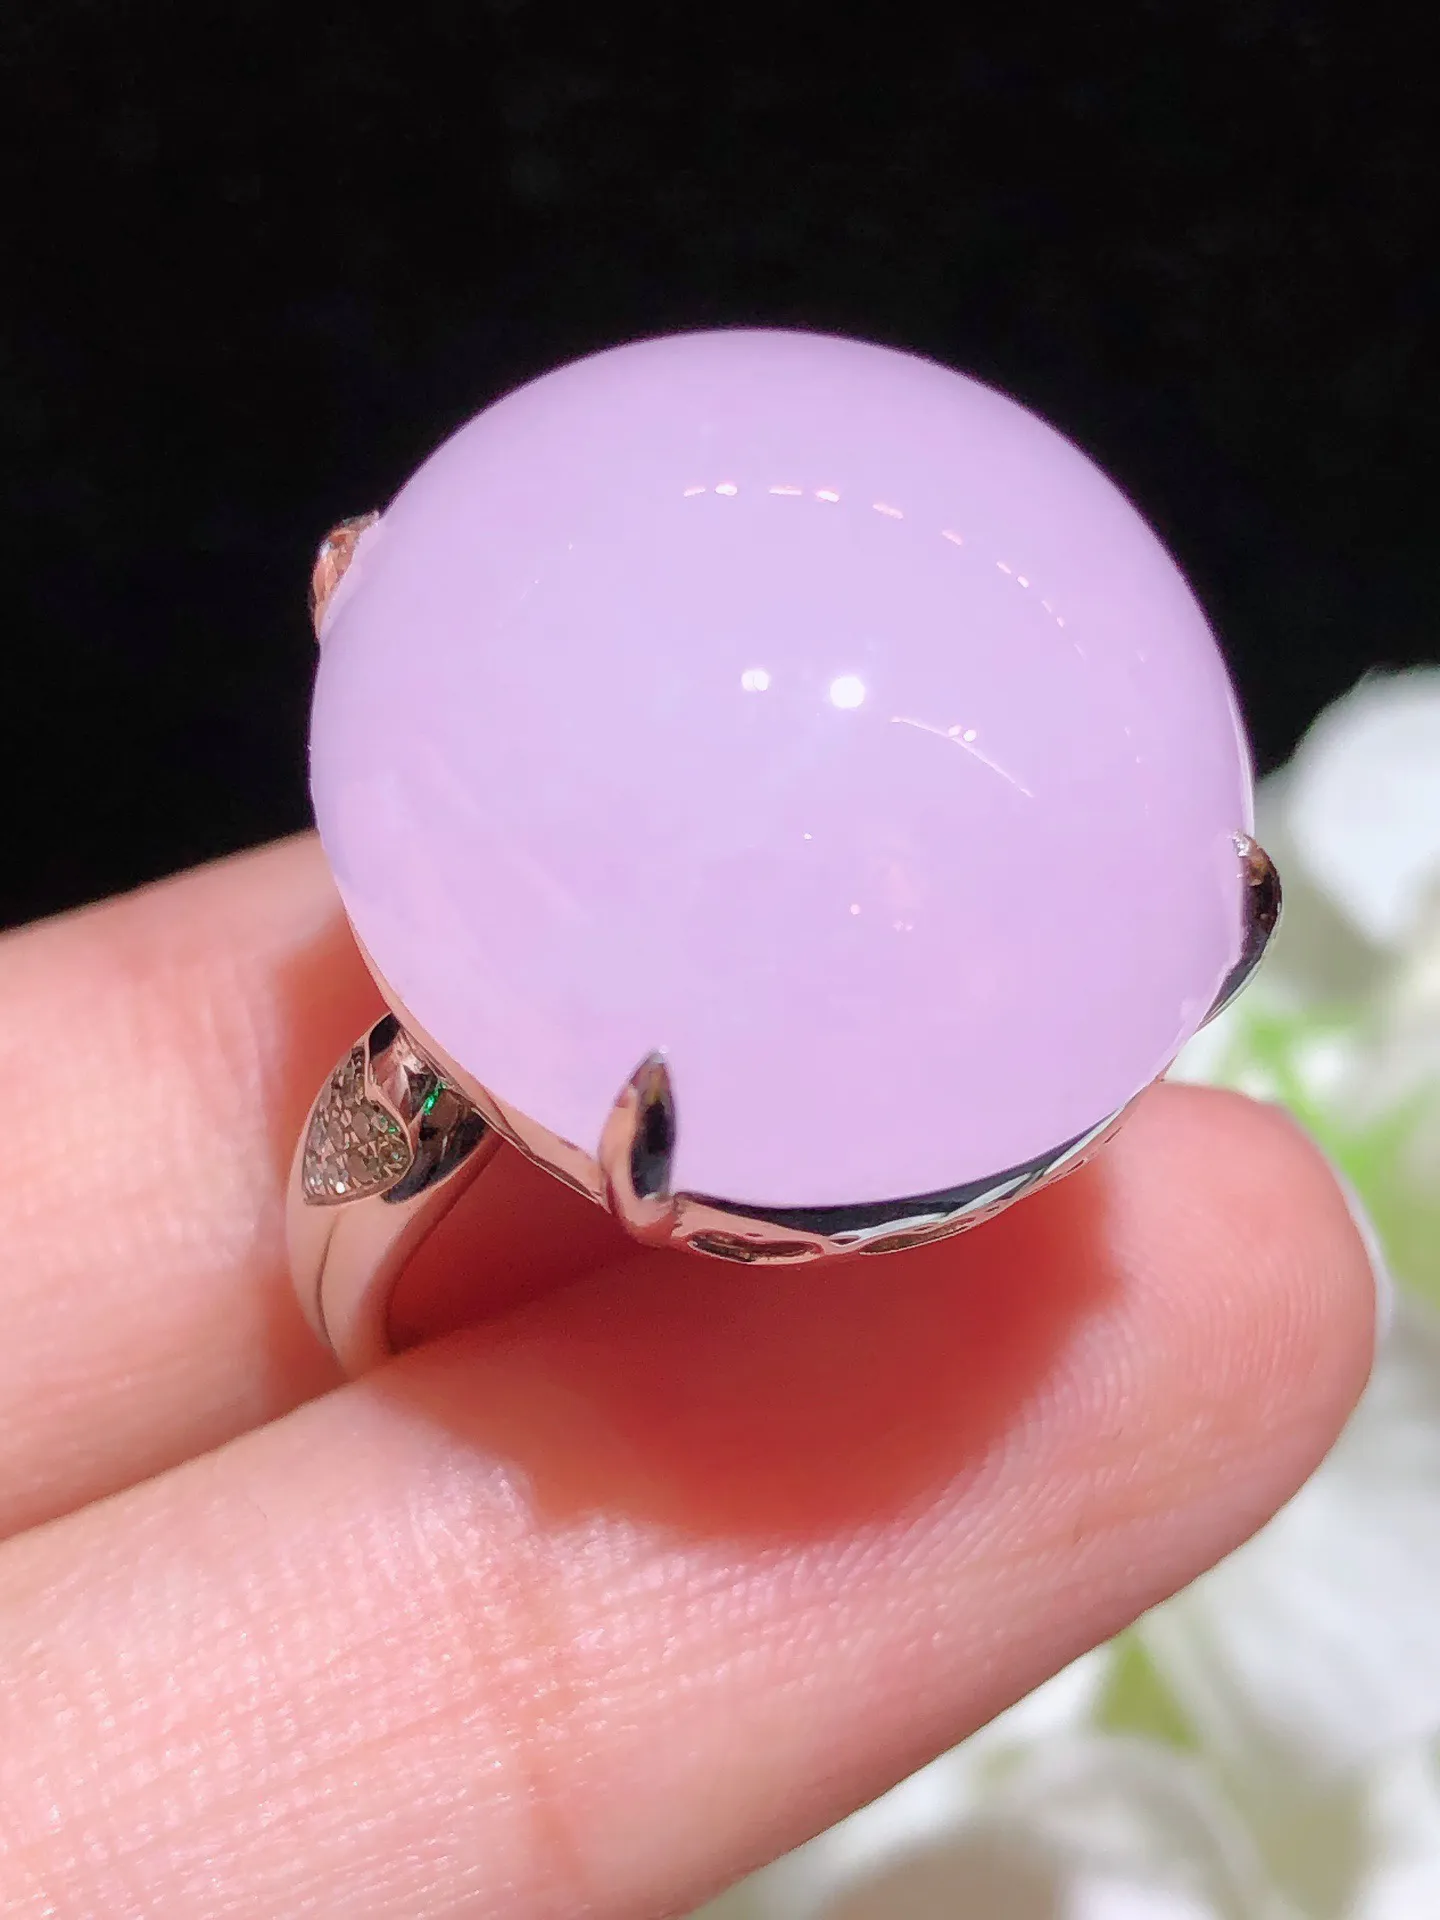 翡翠紫罗兰蛋面戒指 雕工精细 颜色鲜艳 饱满圆润